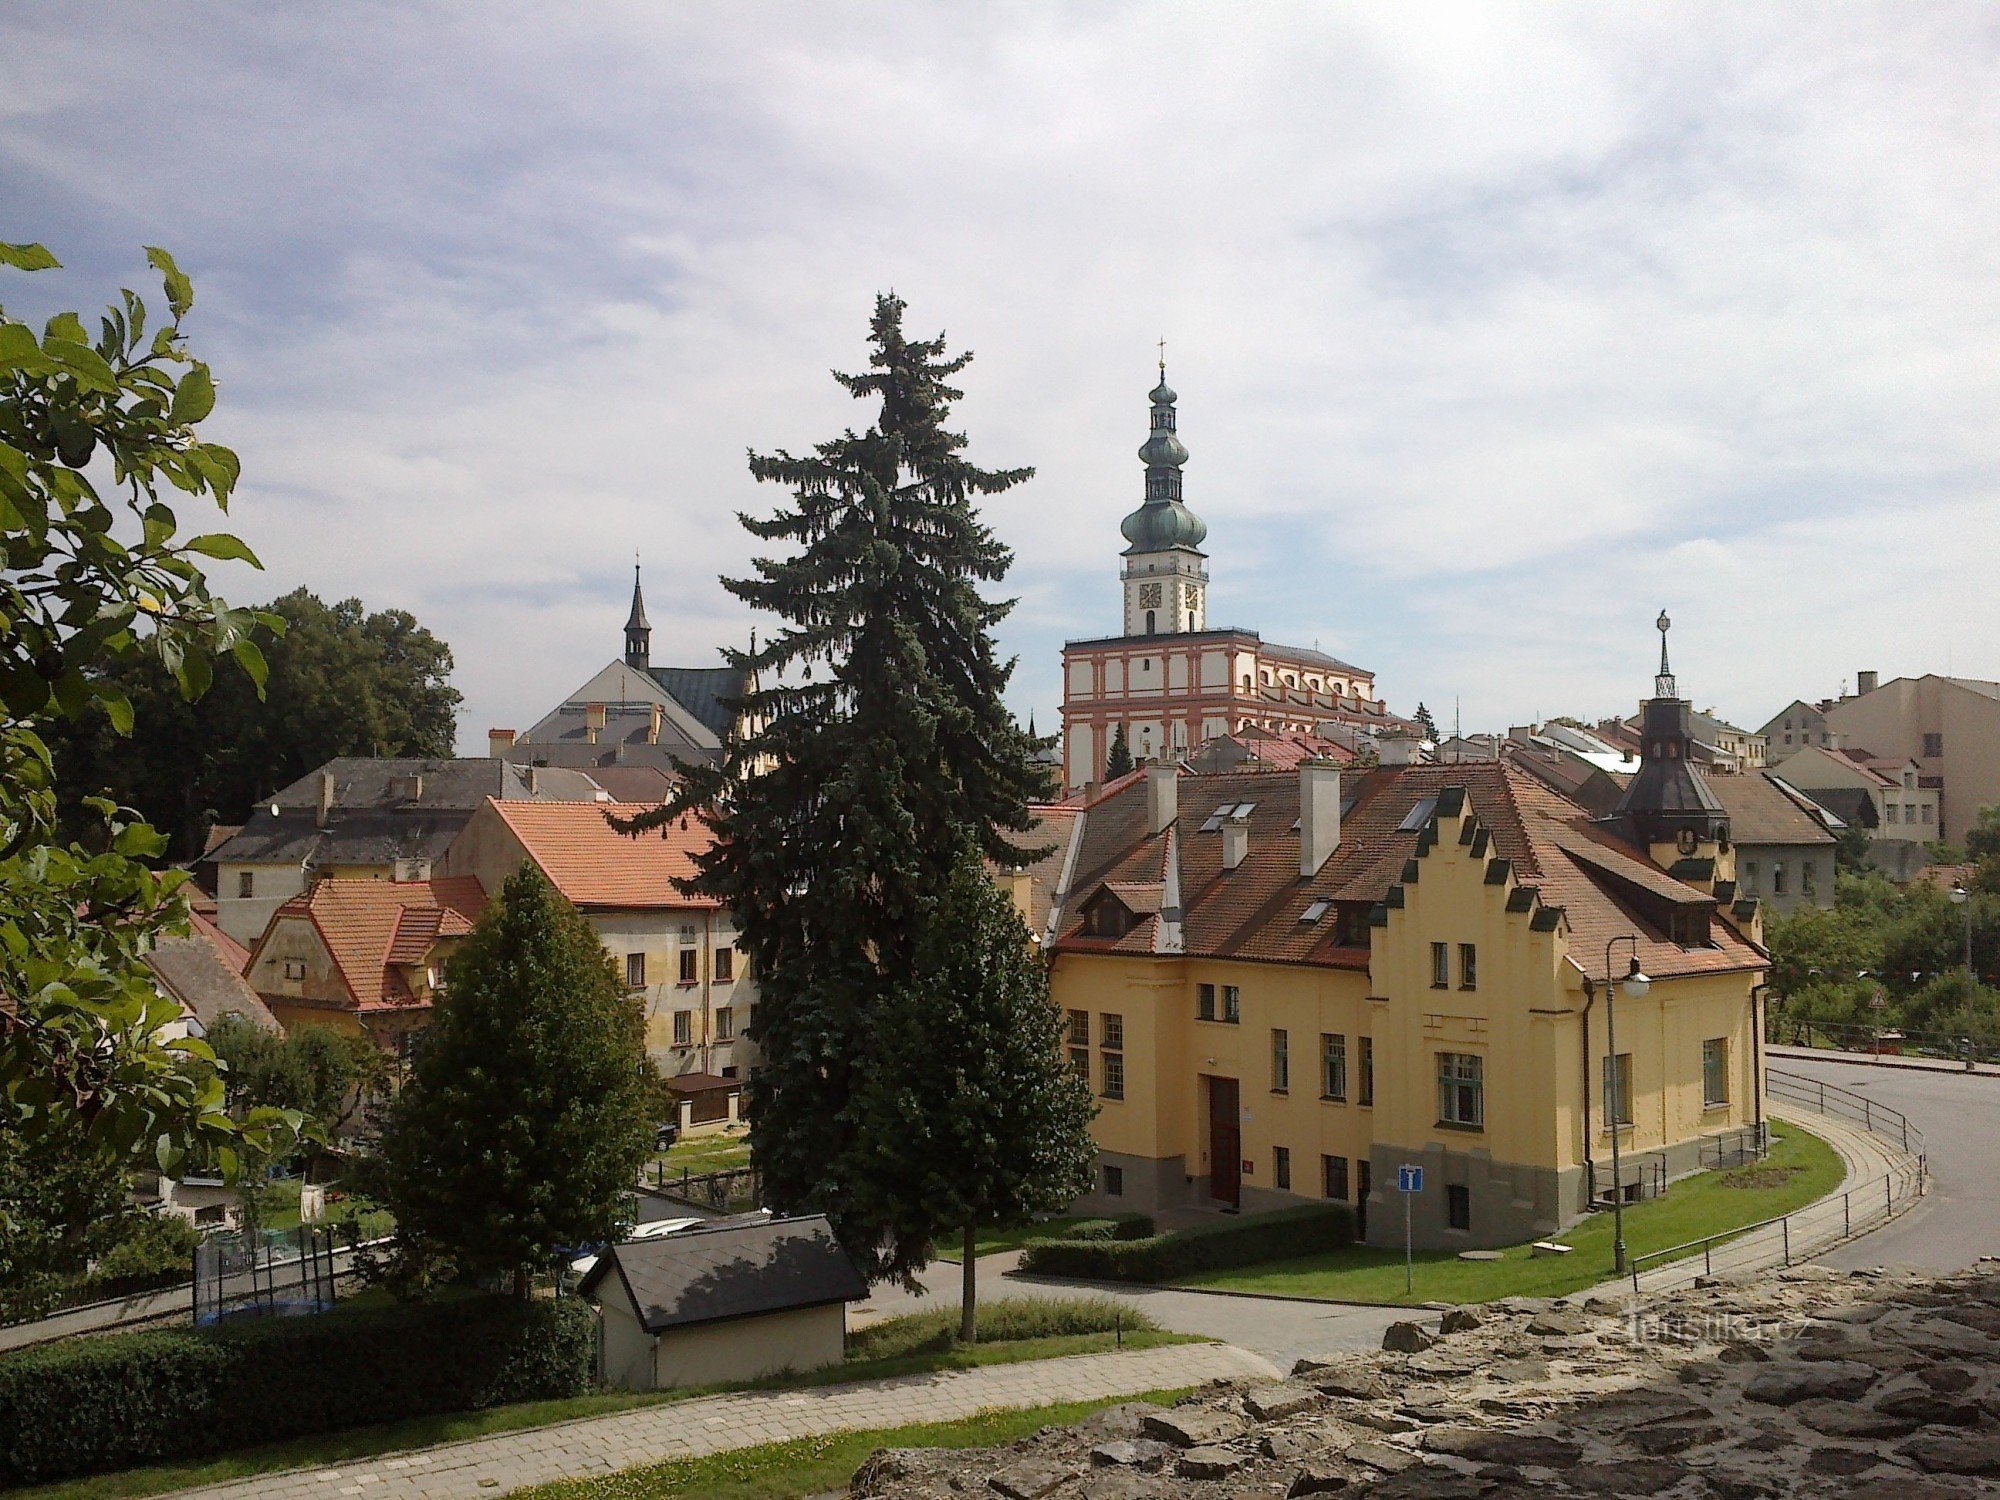 Polná - oraș istoric din Vysočina.